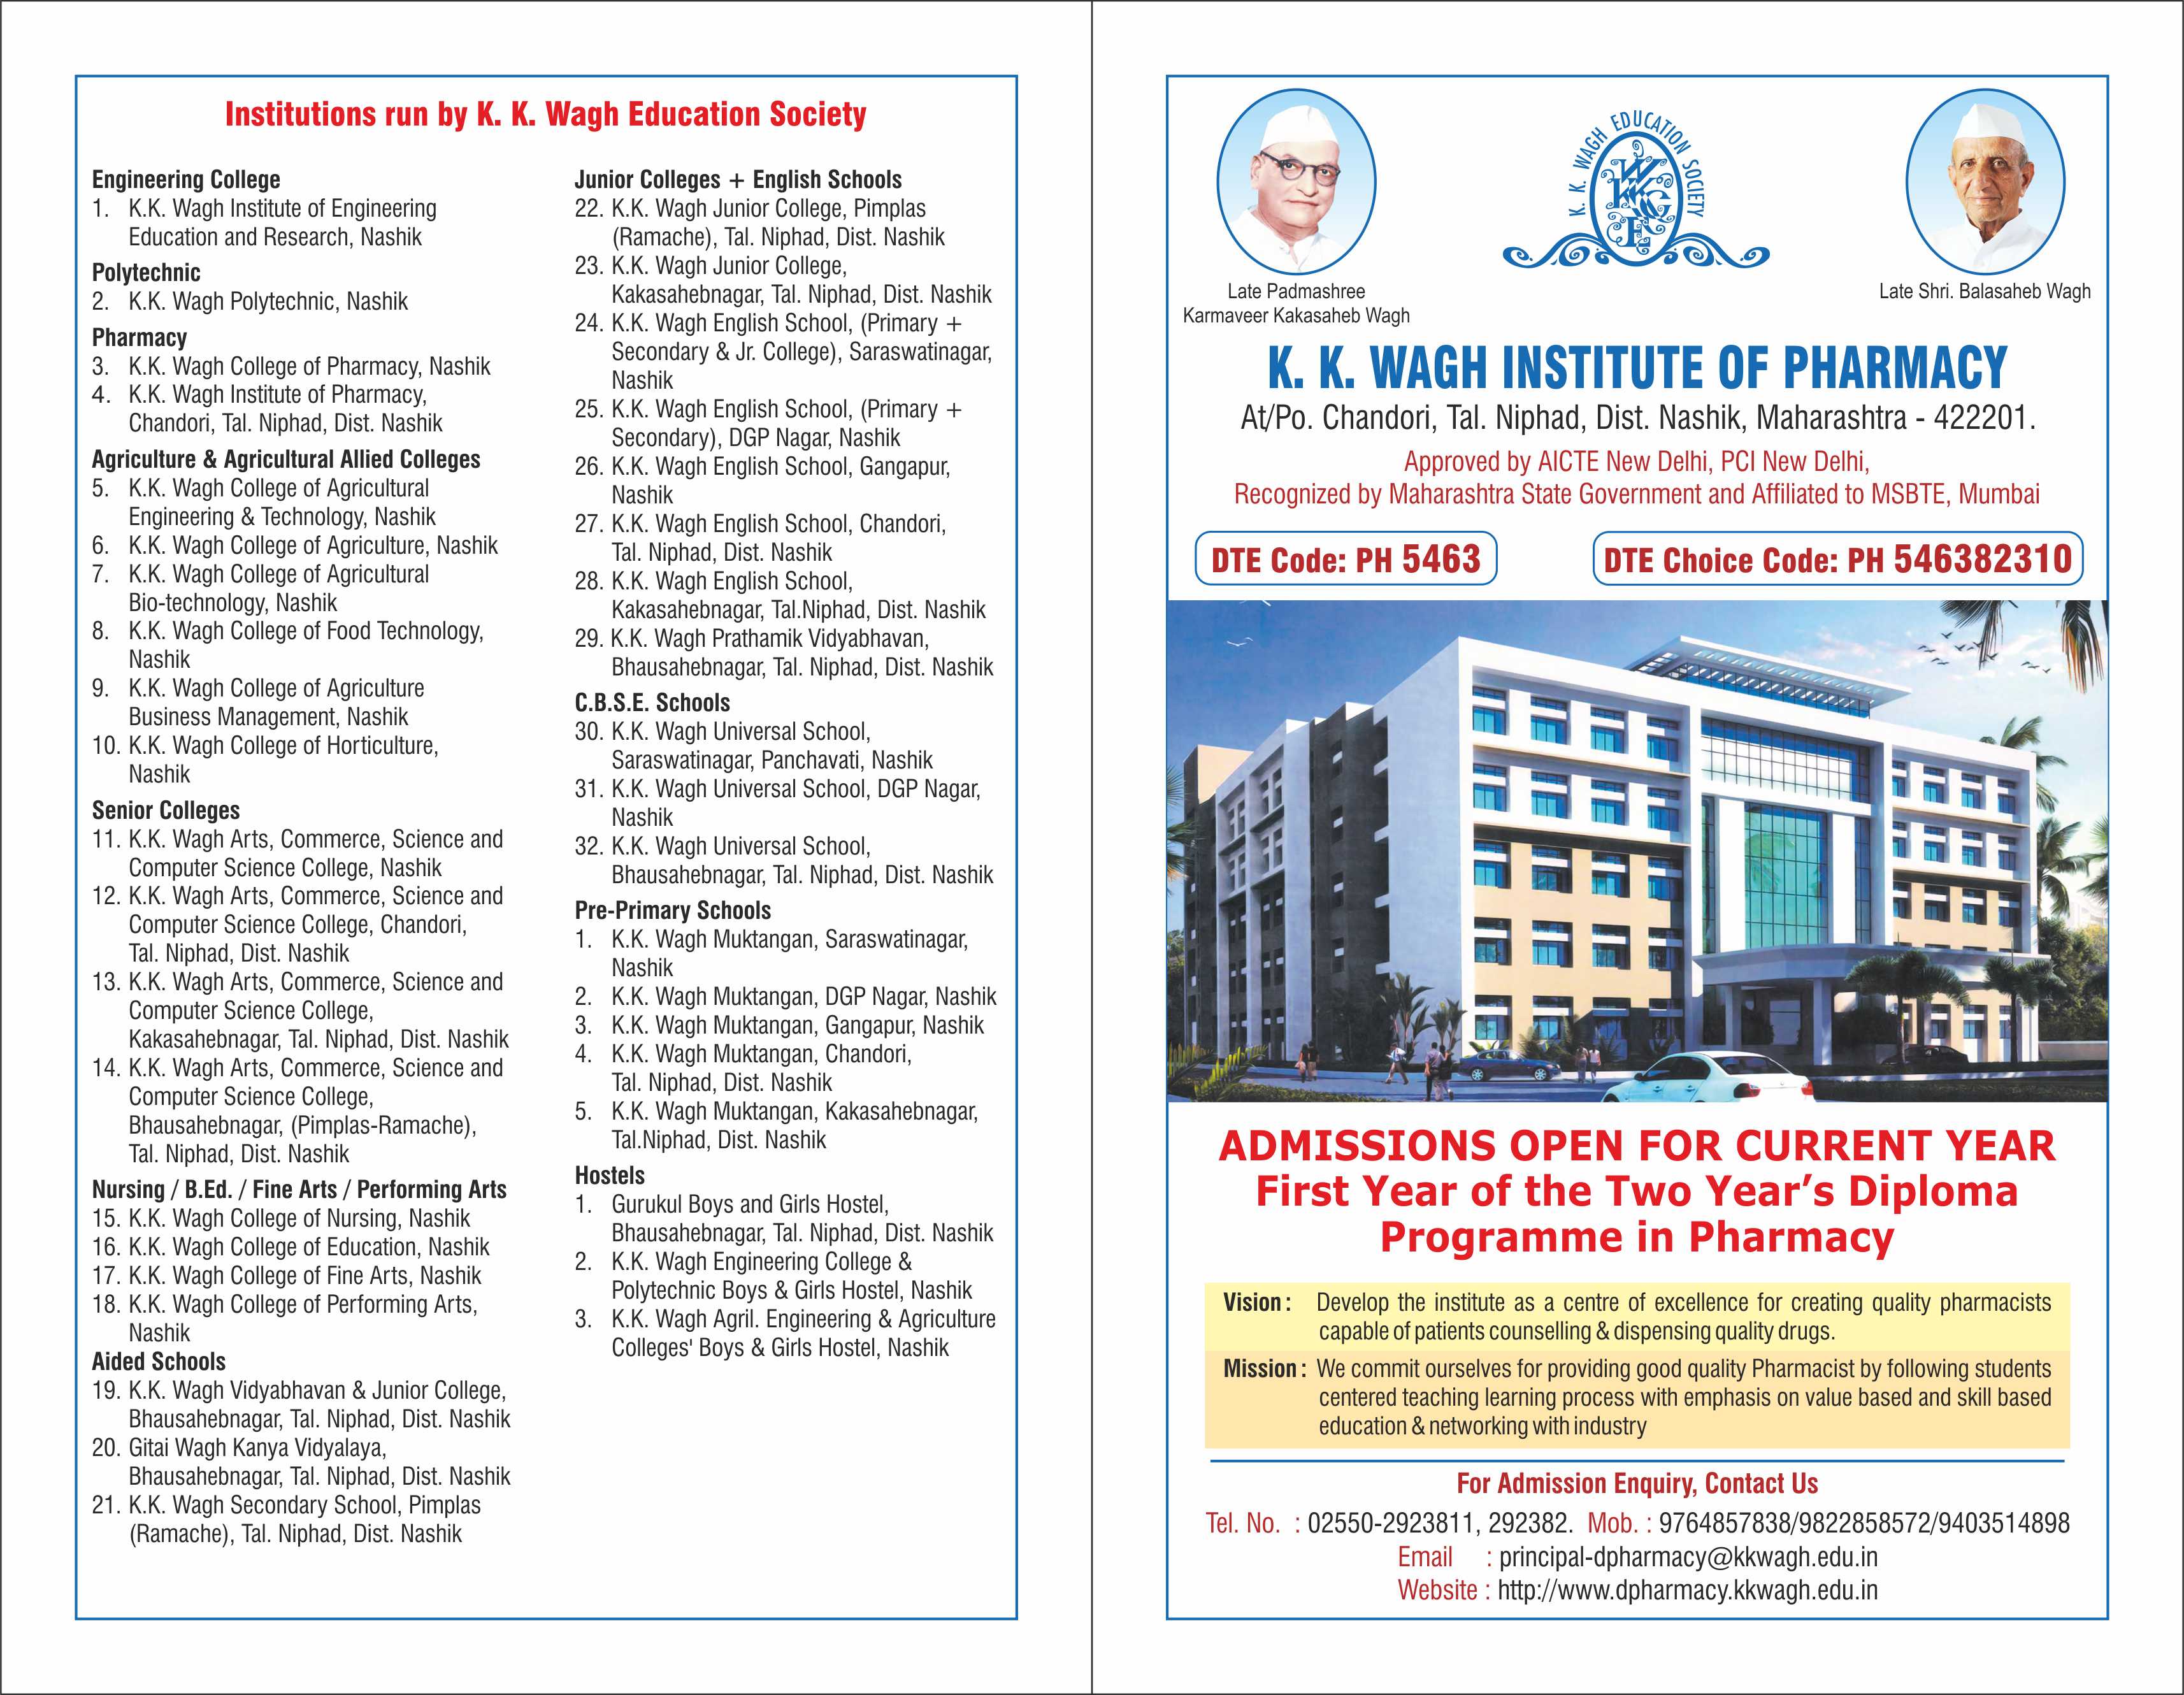 K. K. Wagh Institute of Pharmacy, Pimplas